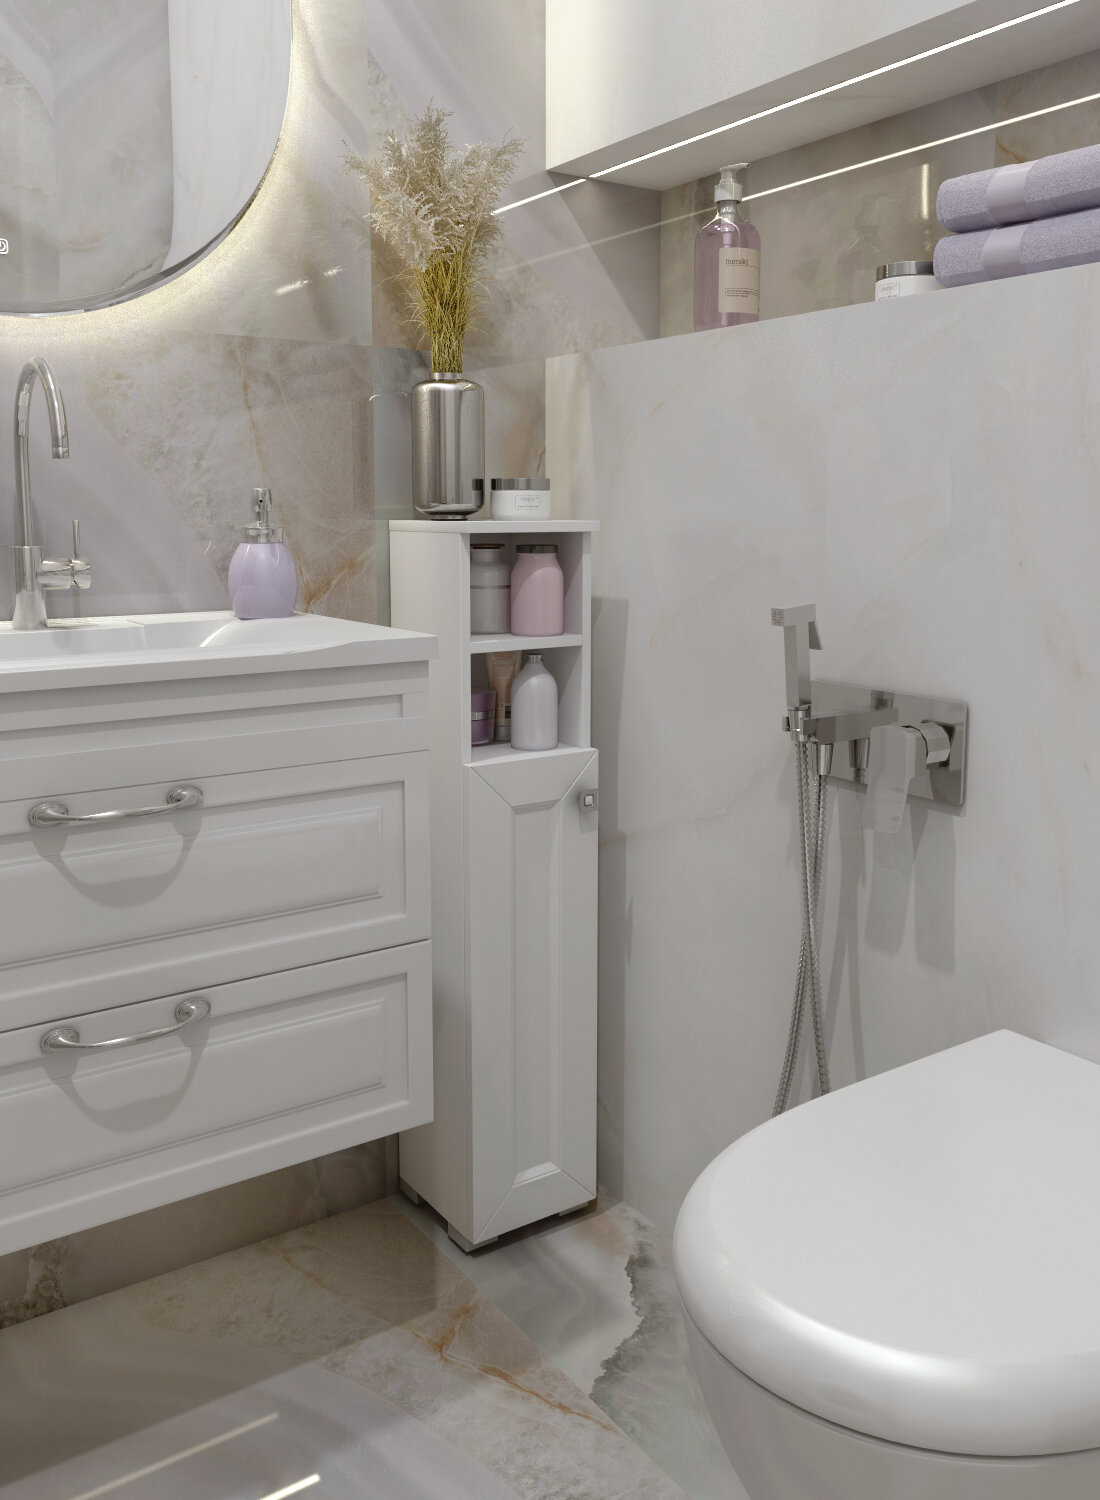 Шкаф для ванной комнаты, REGENT style, ШТГранд 2н, белый, универсальный, 95*20*19